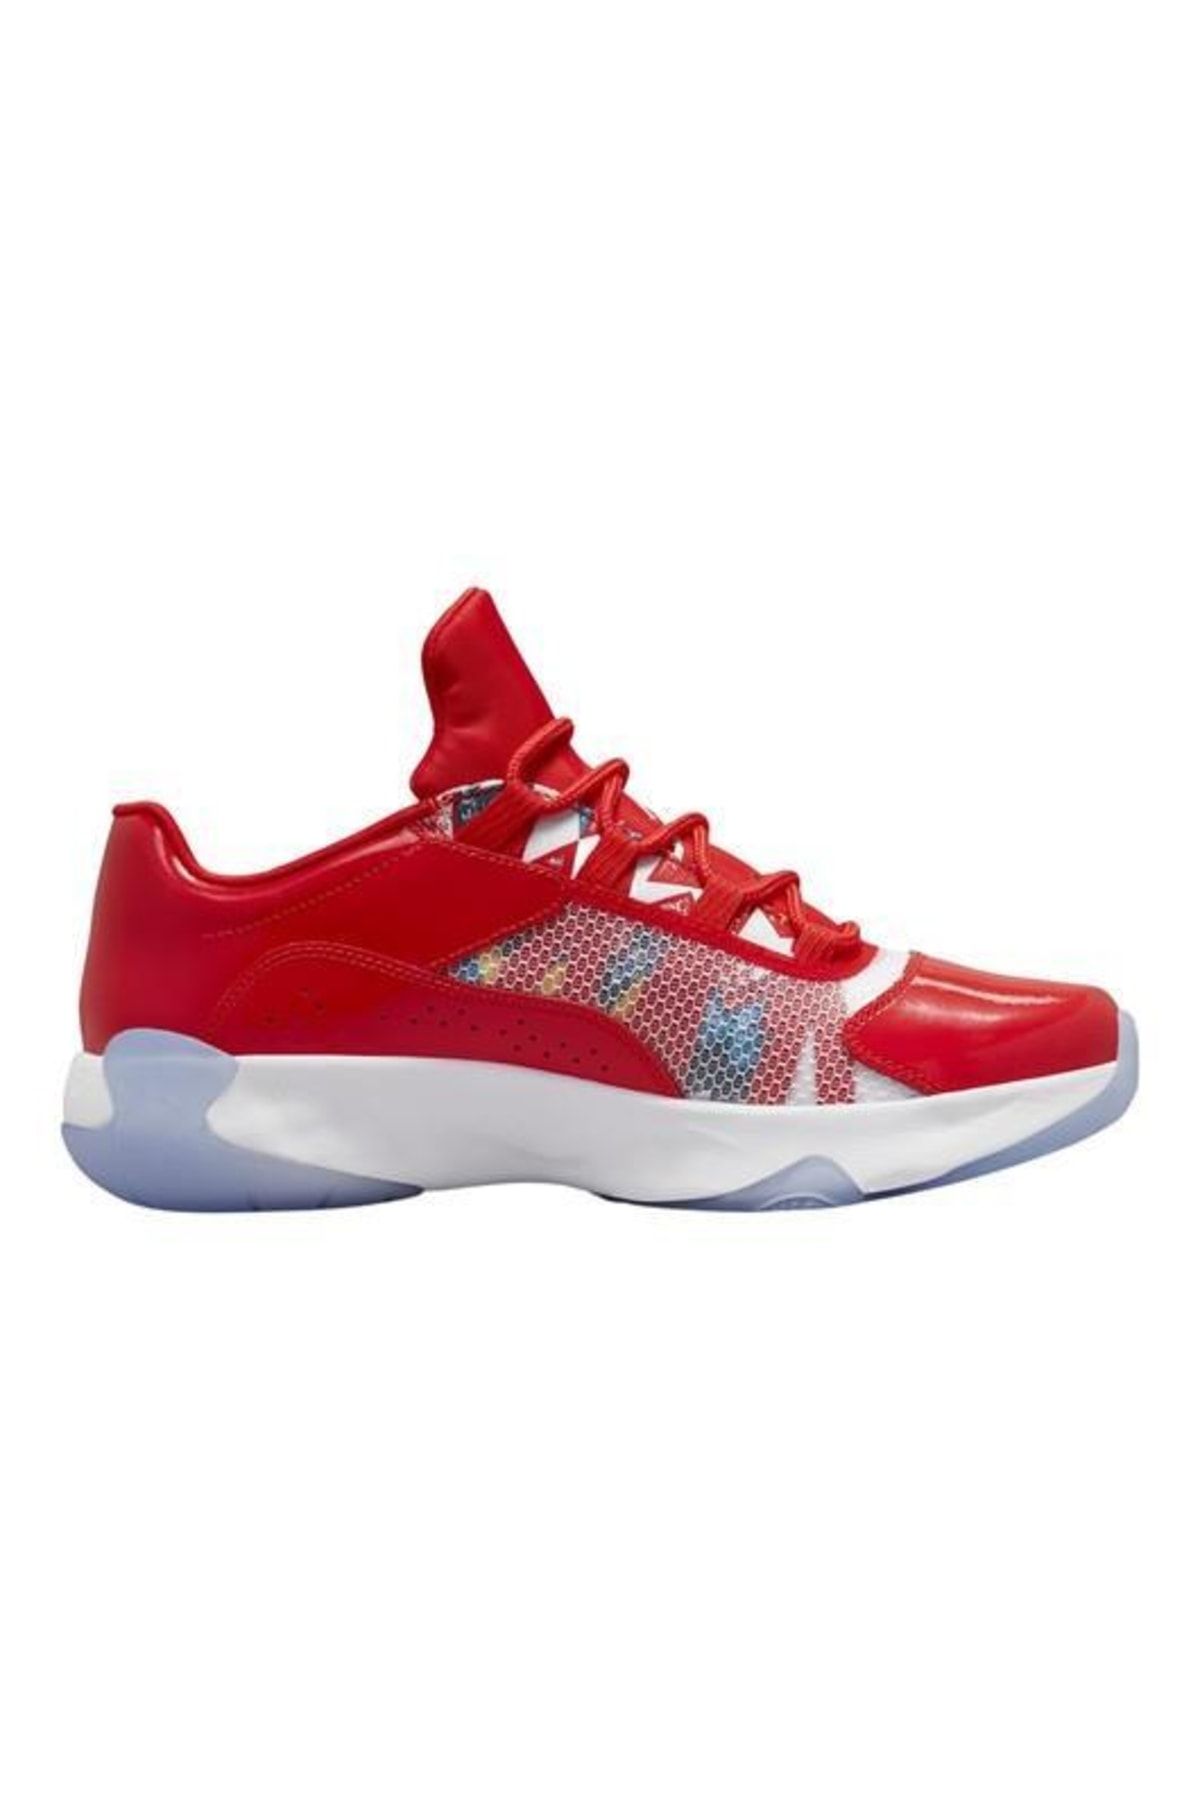 Nike Air Jordan 11 Cmft Low Erkek Spor Ayakkabı Kırmızı Dq0874 600